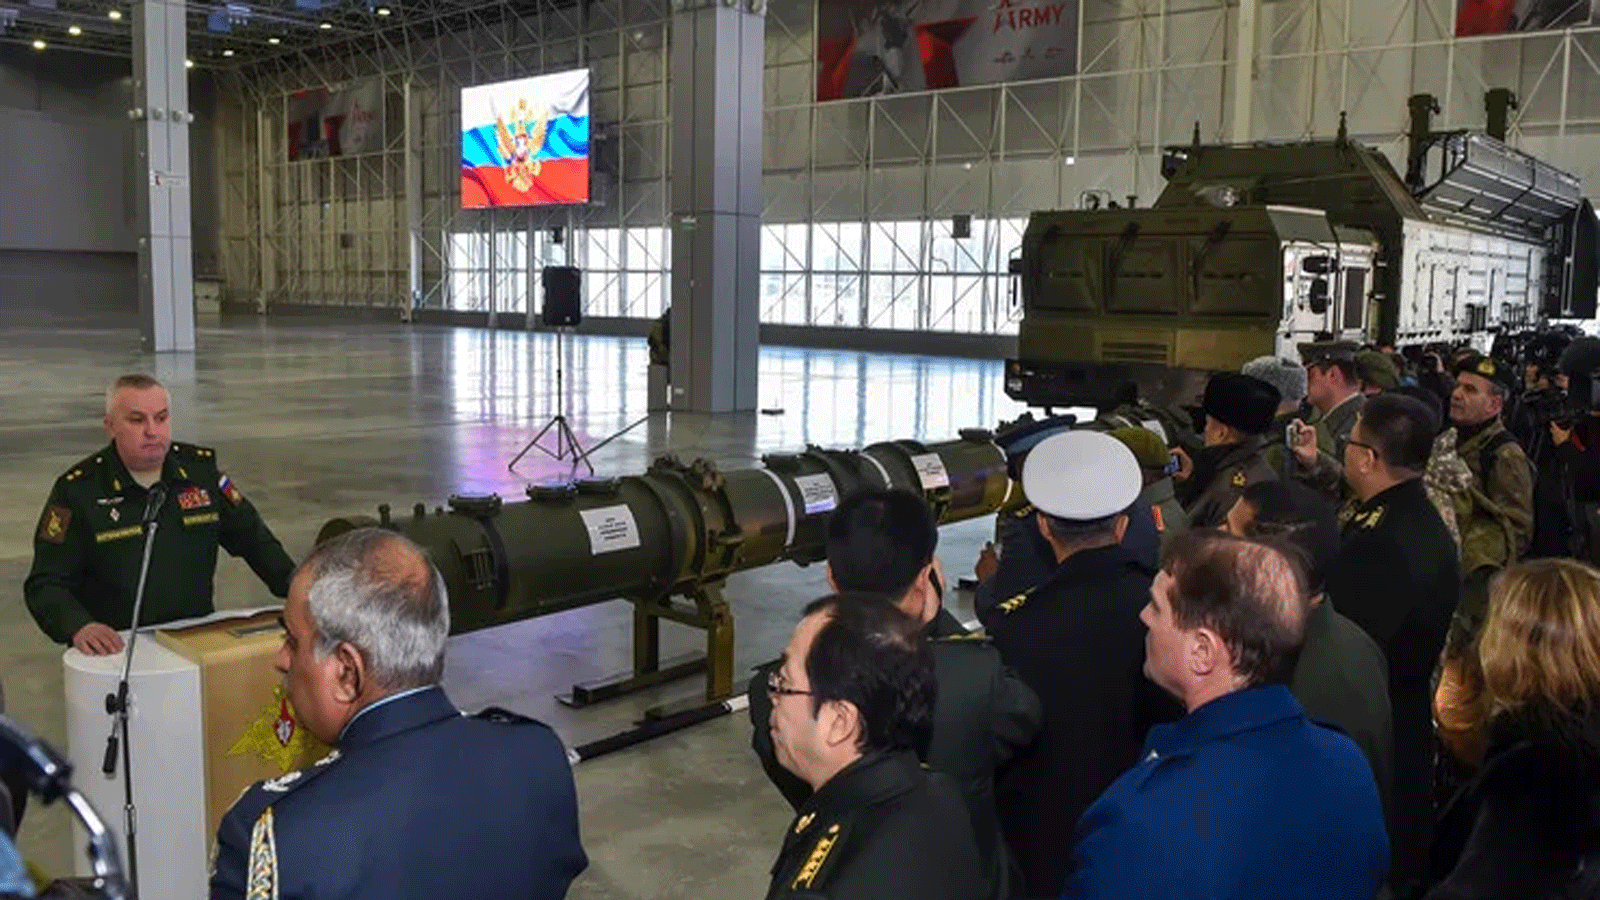 يستعرض مسؤولو وزارة الدفاع الروسية صاروخ كروز 9M729 خارج موسكو في 23 كانون الثاني\ يناير 2019 ، ويصرون على أن مداها لا ينتهك معاهدة القوى النووية متوسطة المدى لعام 1987.